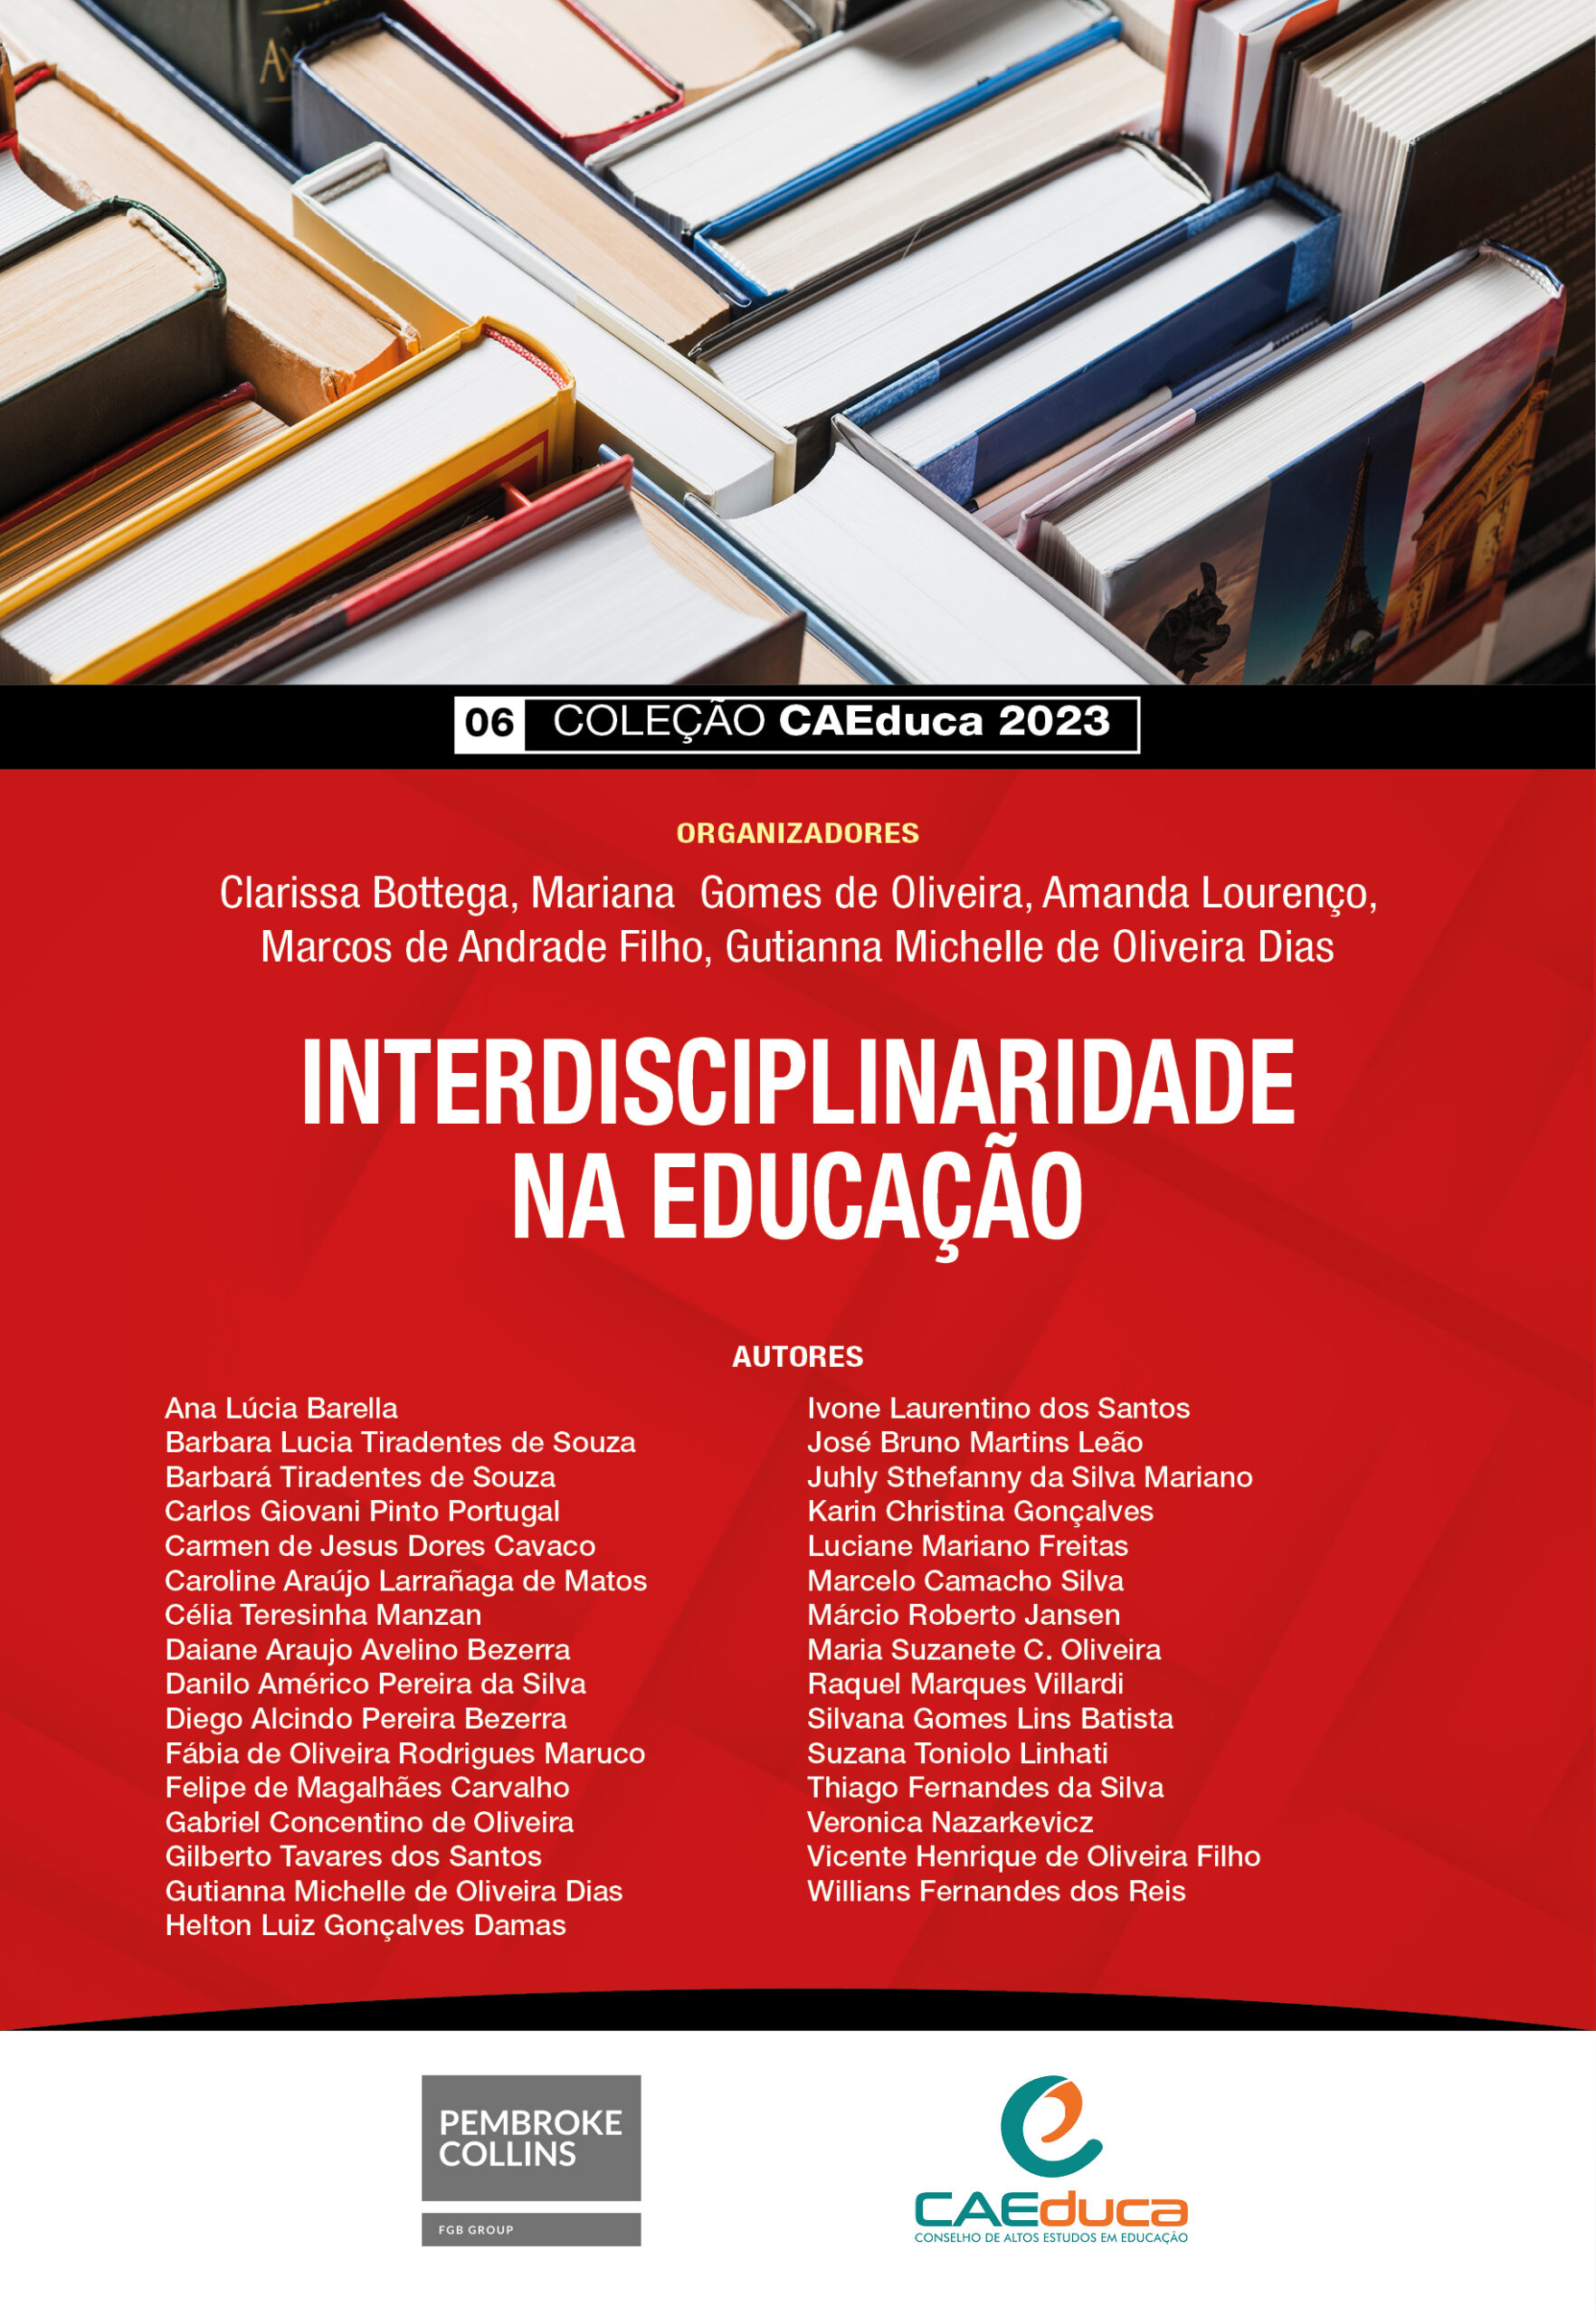 06_Capa_CAEDUCA 2023_INTERDISCIPLINARIDADE NA EDUCAÇÃO